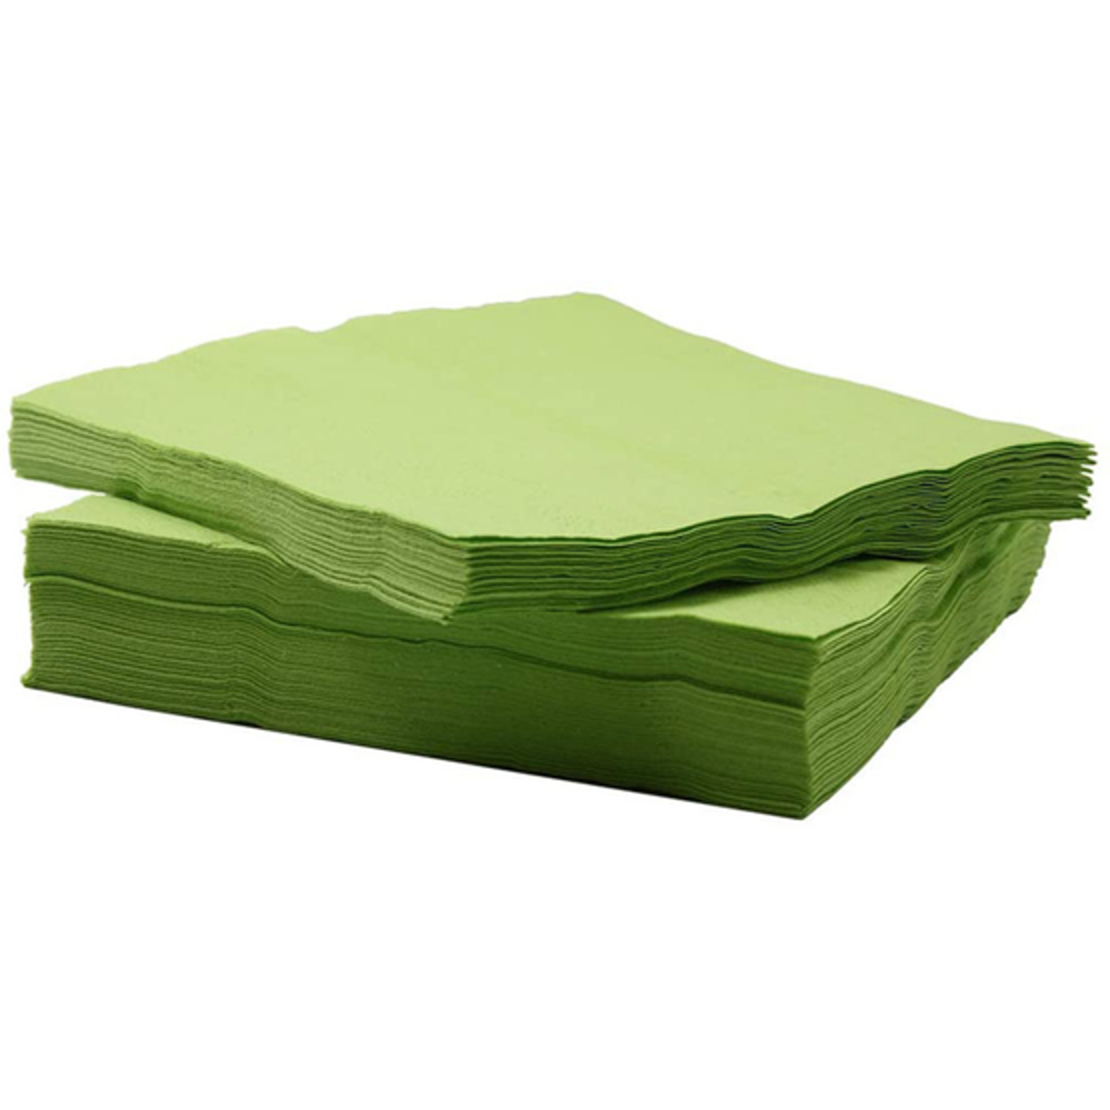 מפיות נייר צבע אחיד - ירוק בהיר (20יח')